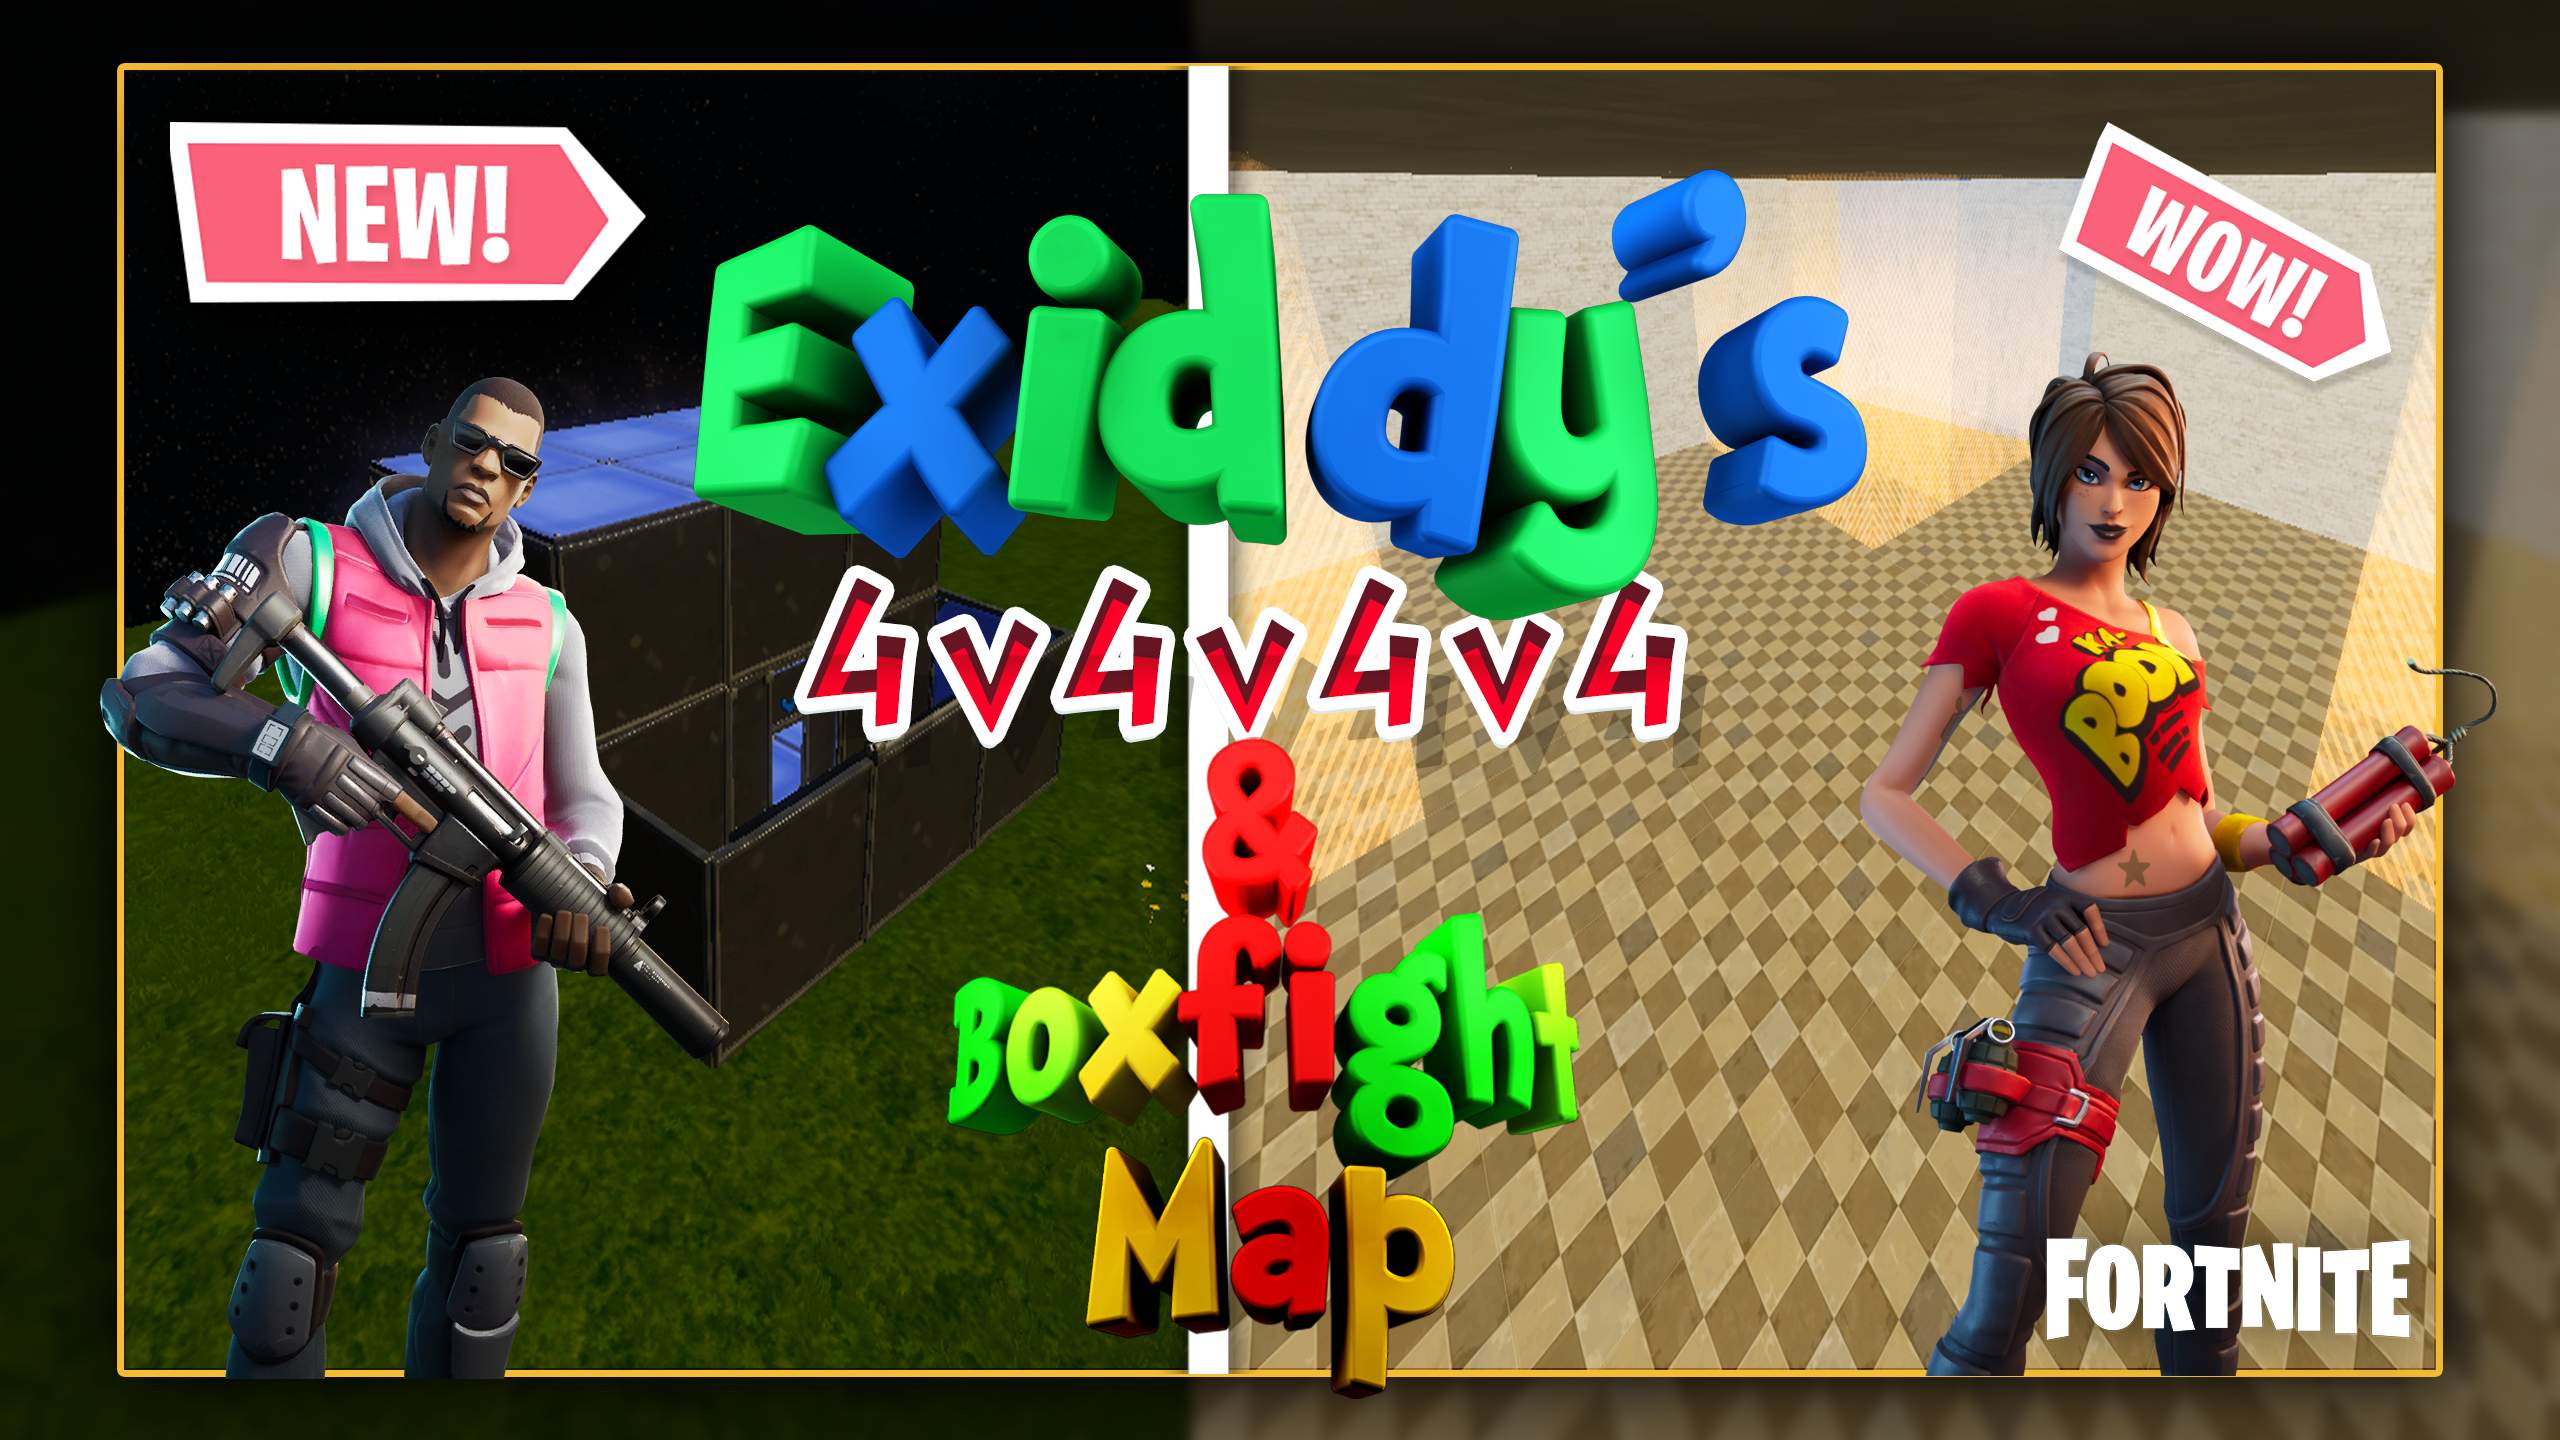 EXIDDY'S 4V4V4V4 & BOXFIGHT MAP!